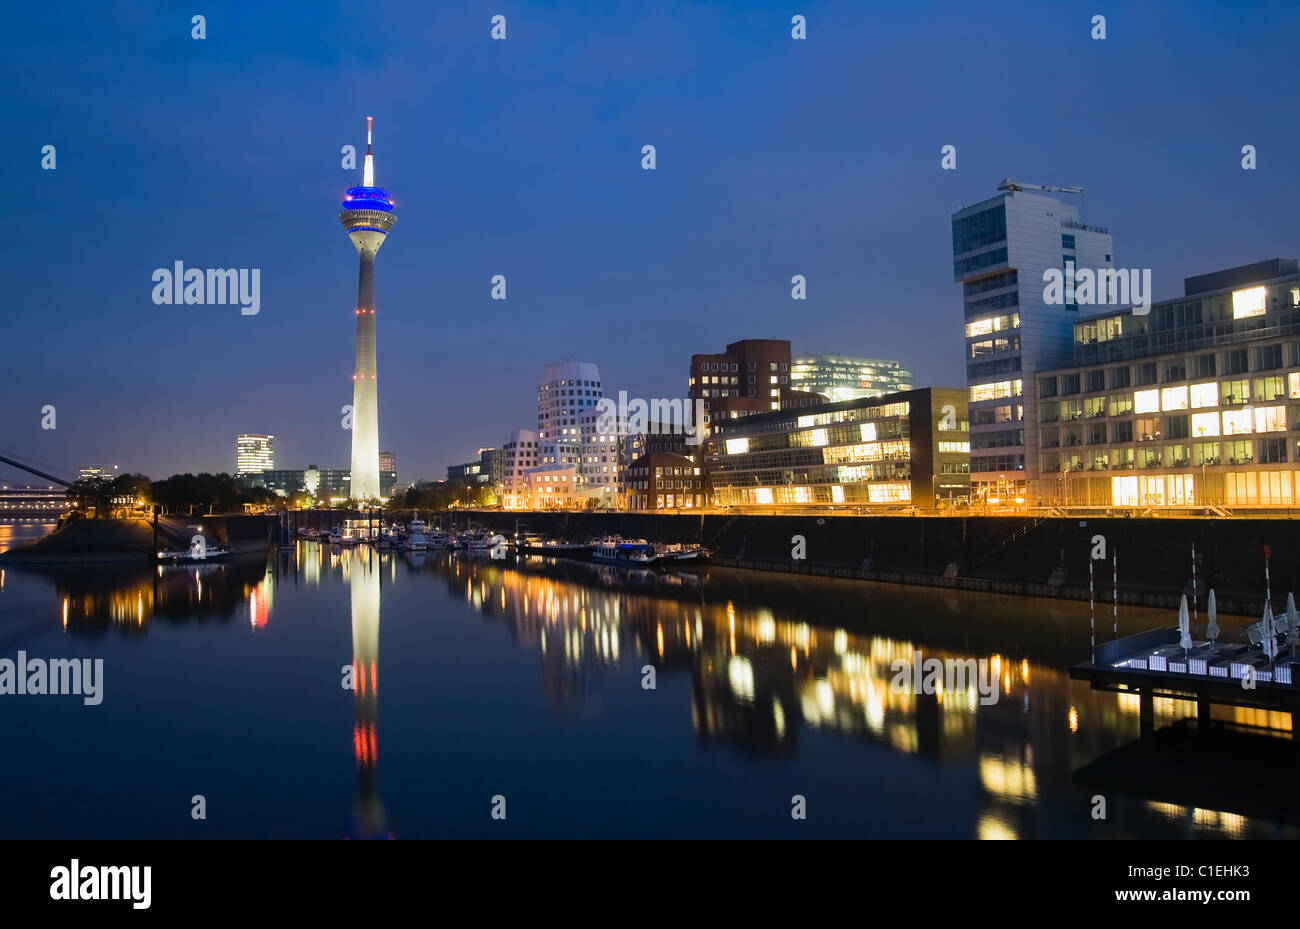 Night scene of the Media harbour in Düsseldorf, Germany Stock Photo